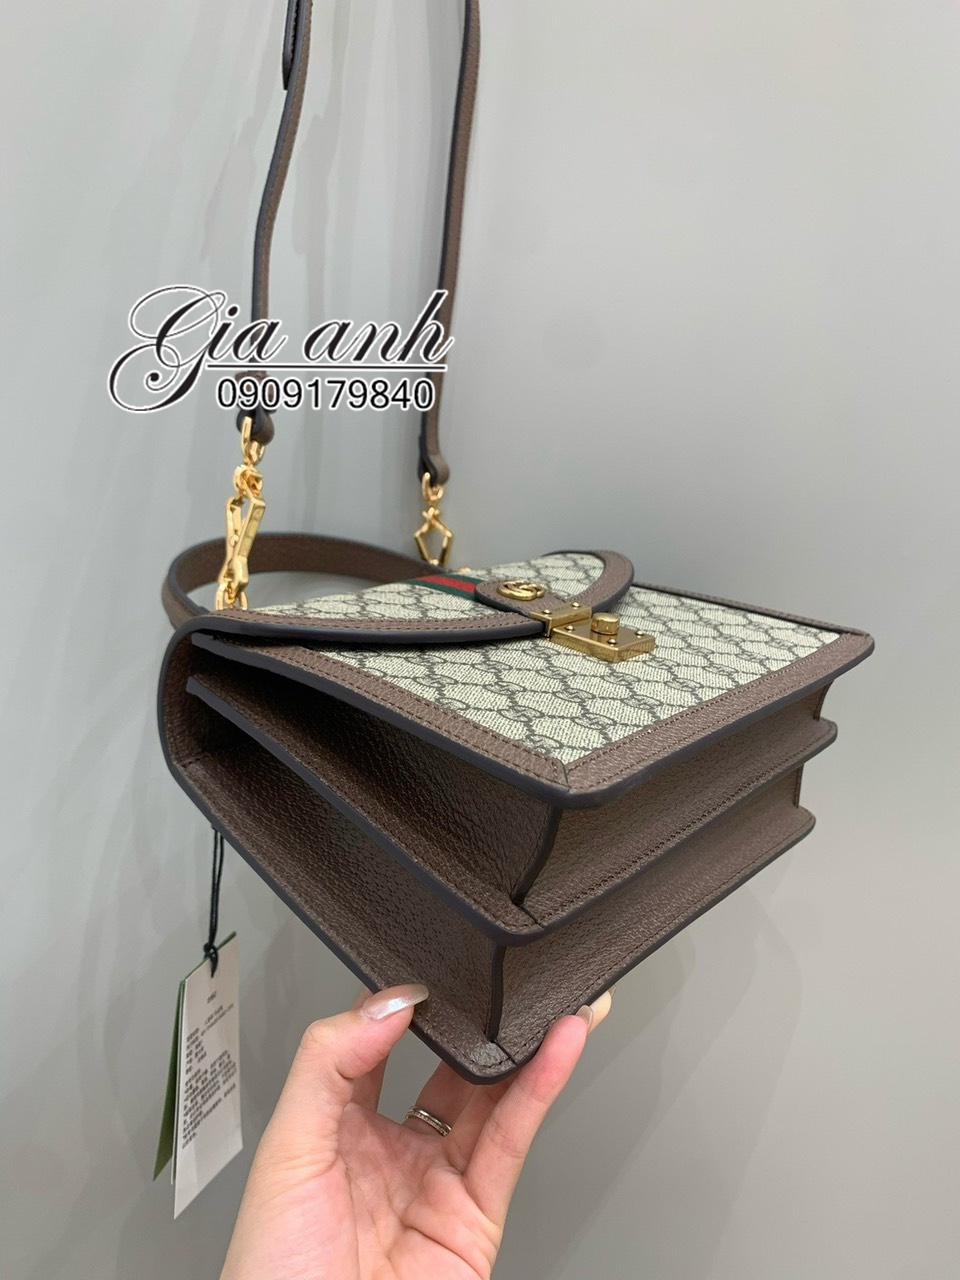 Túi Gucci Ophidia Siêu Cấp Vip size 25 cm